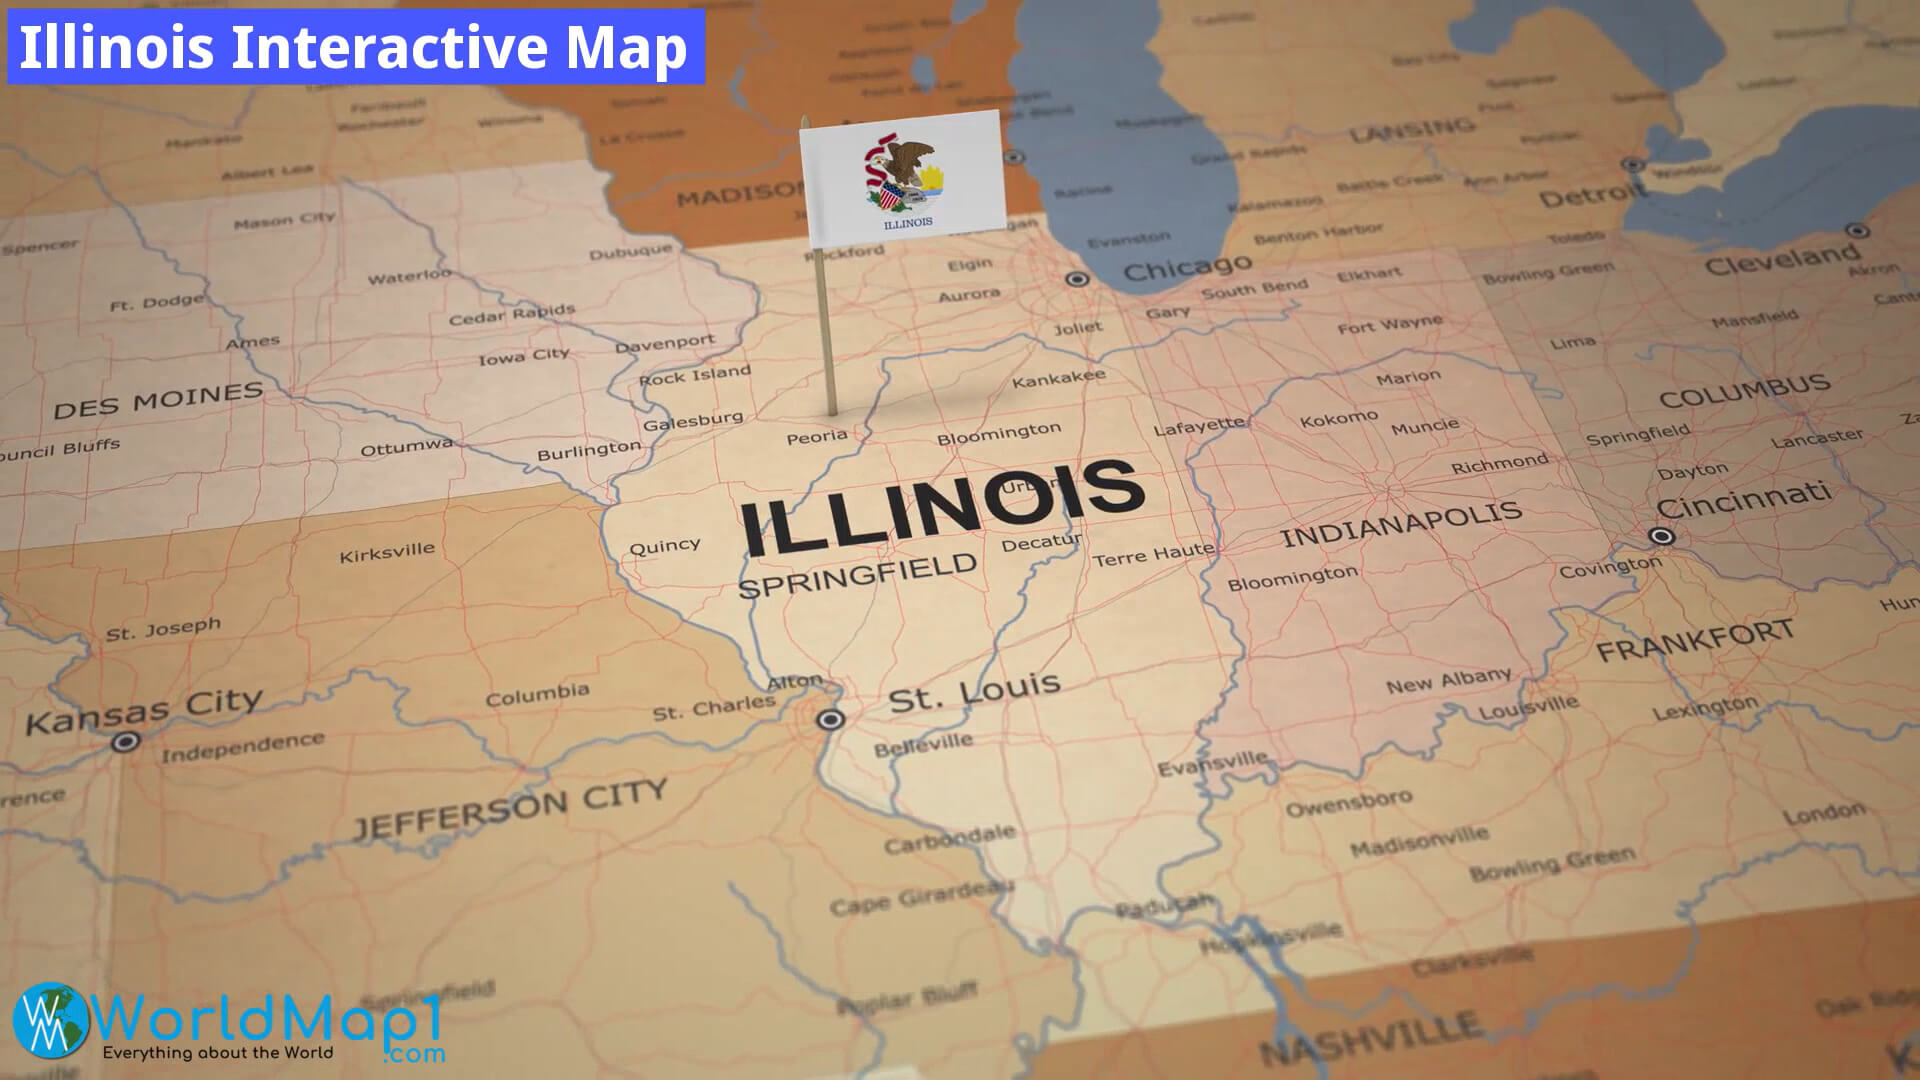 Illinois Interactive Map